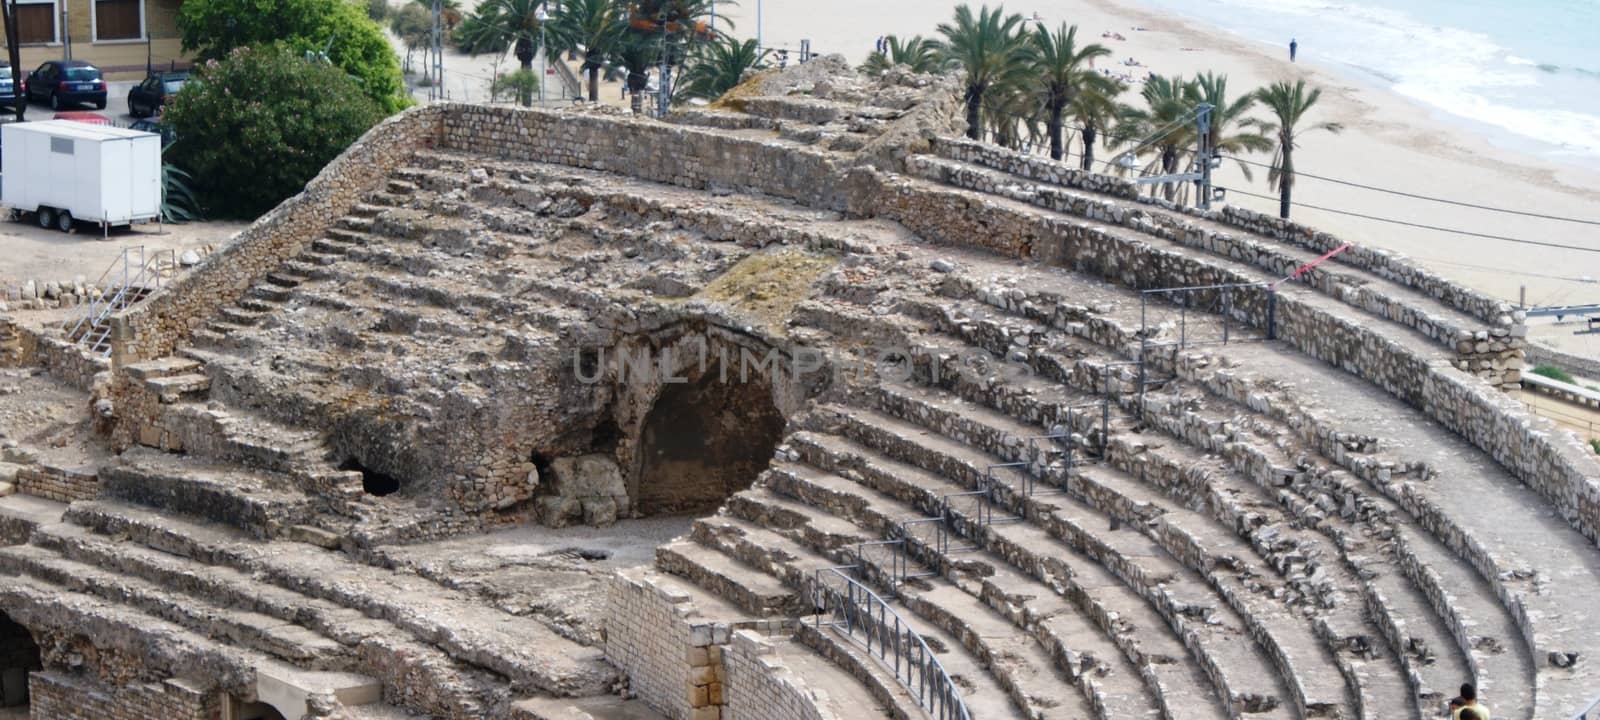 Tarragona amphitheatre in Spain, Costa Dorada, Catalonia